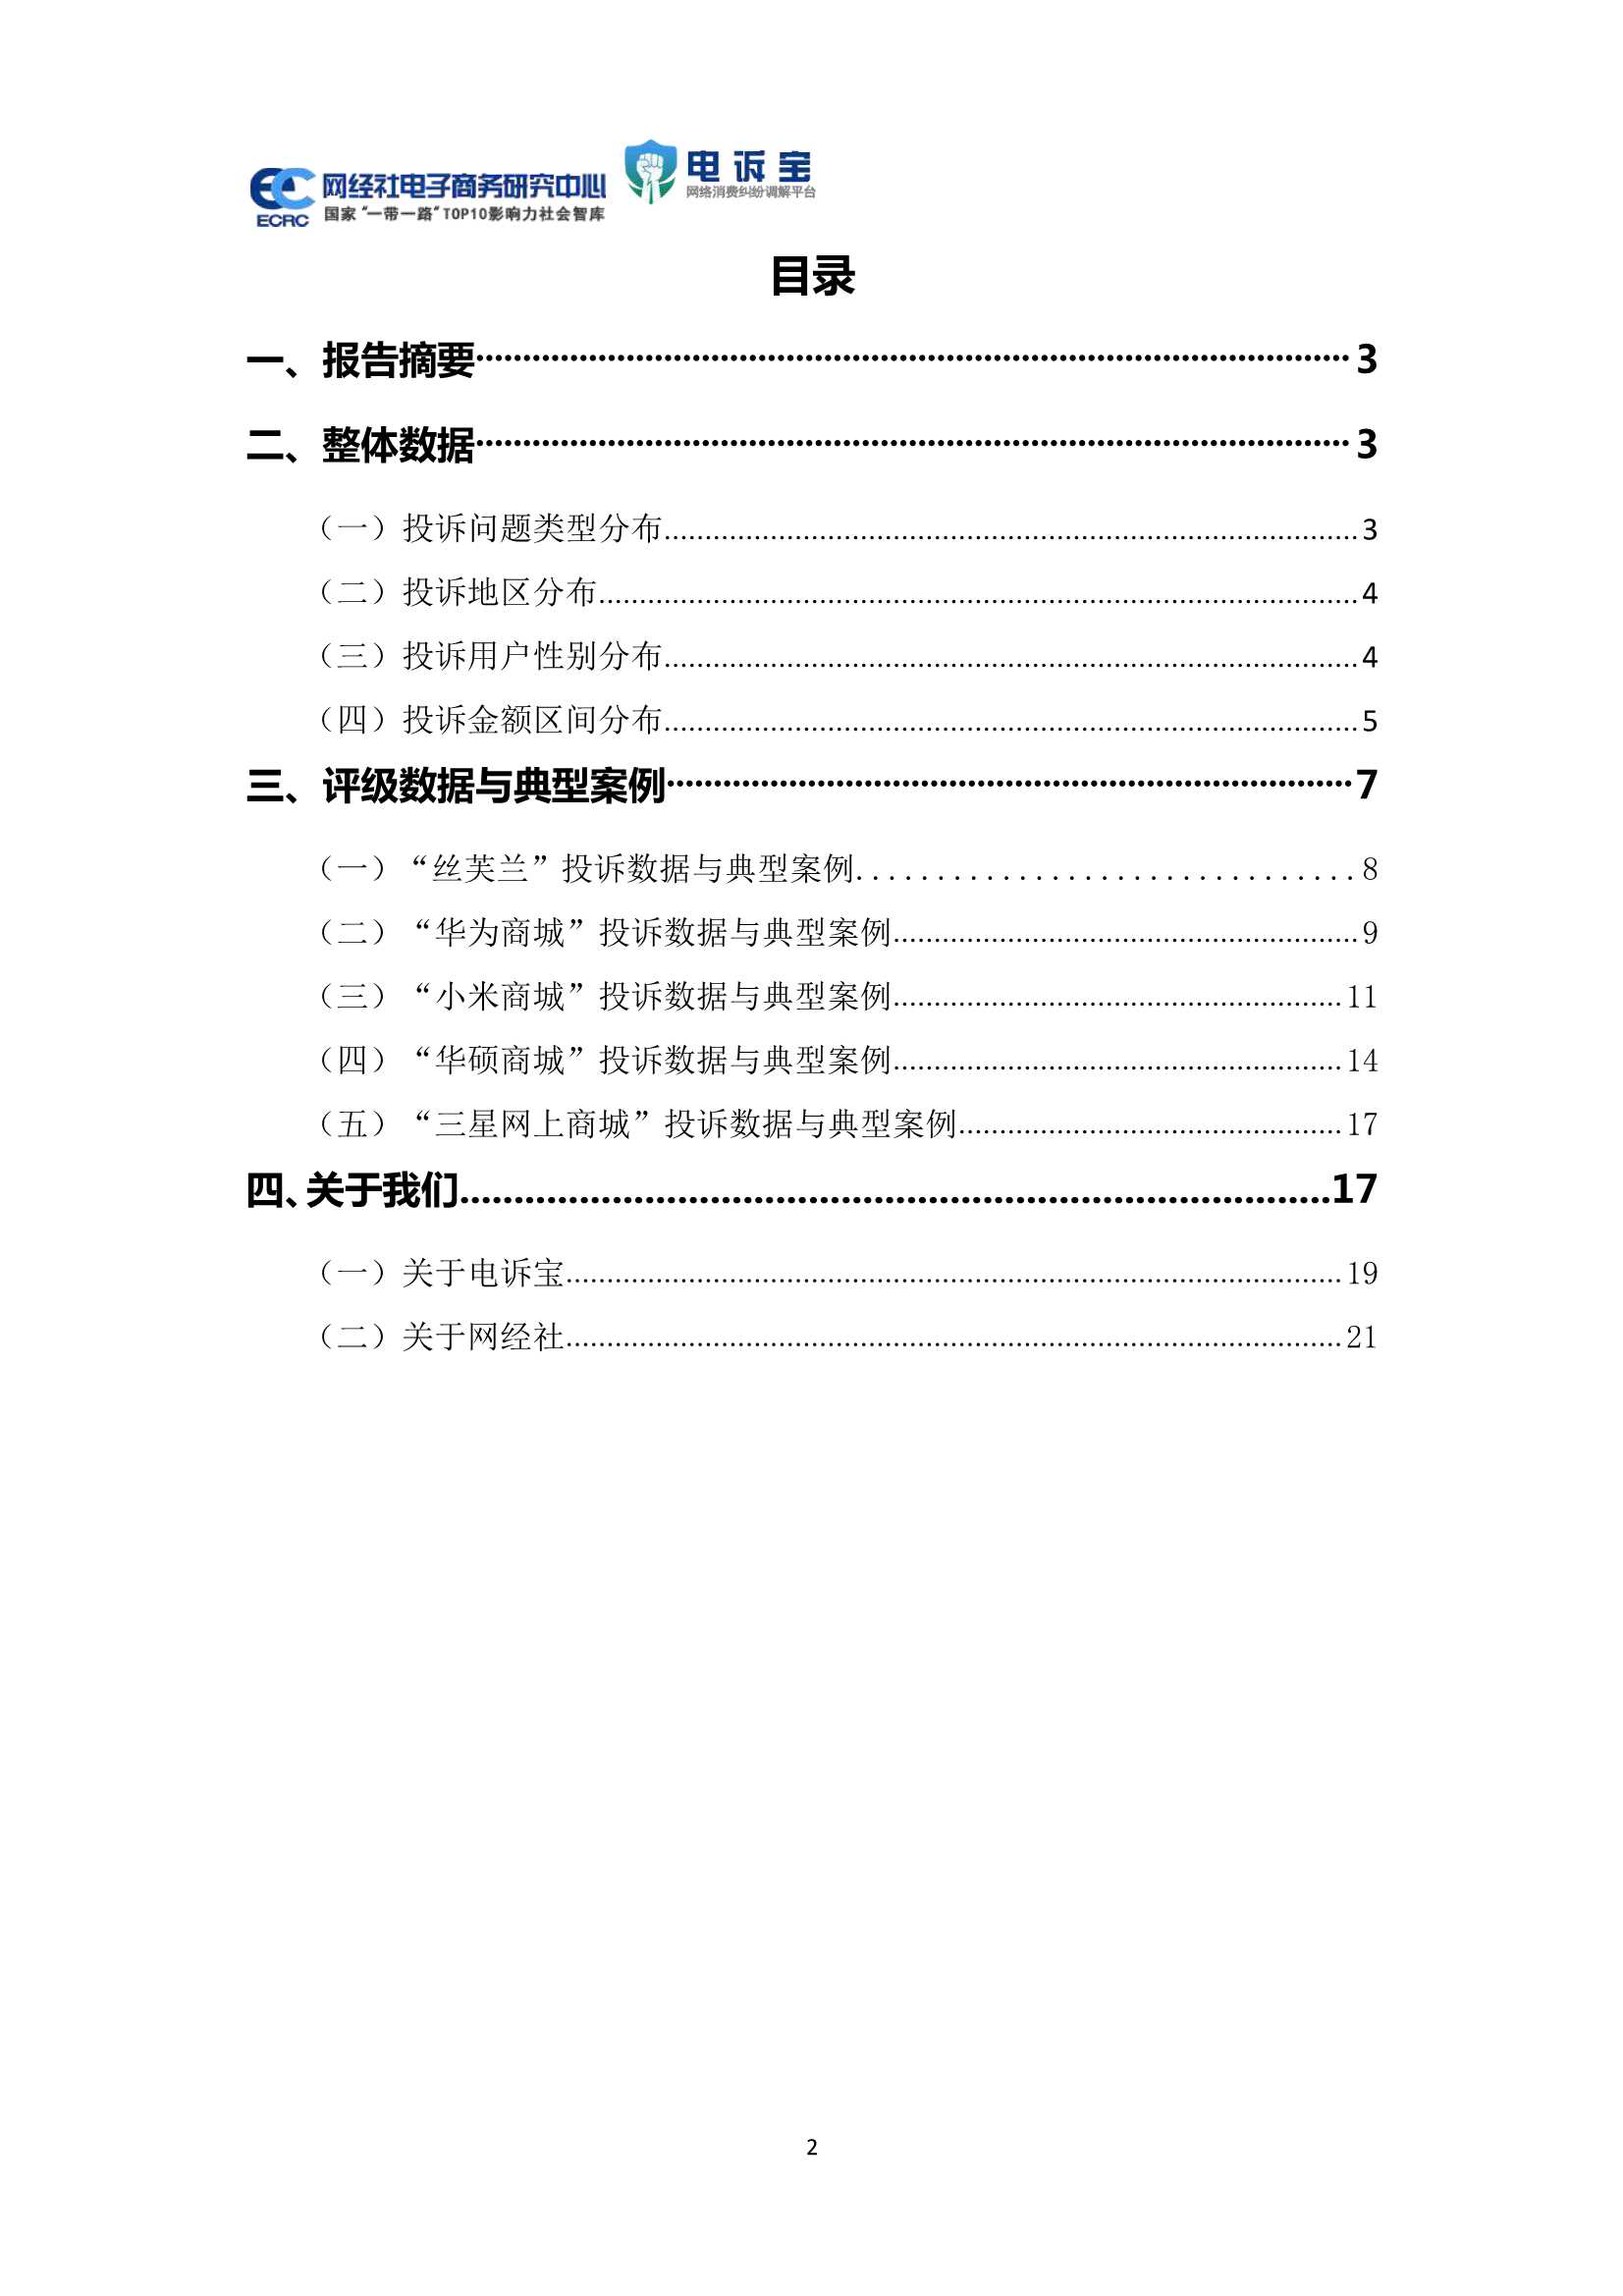 2021年中国品牌电商投诉数据与典型案例报告-2022.02-25页